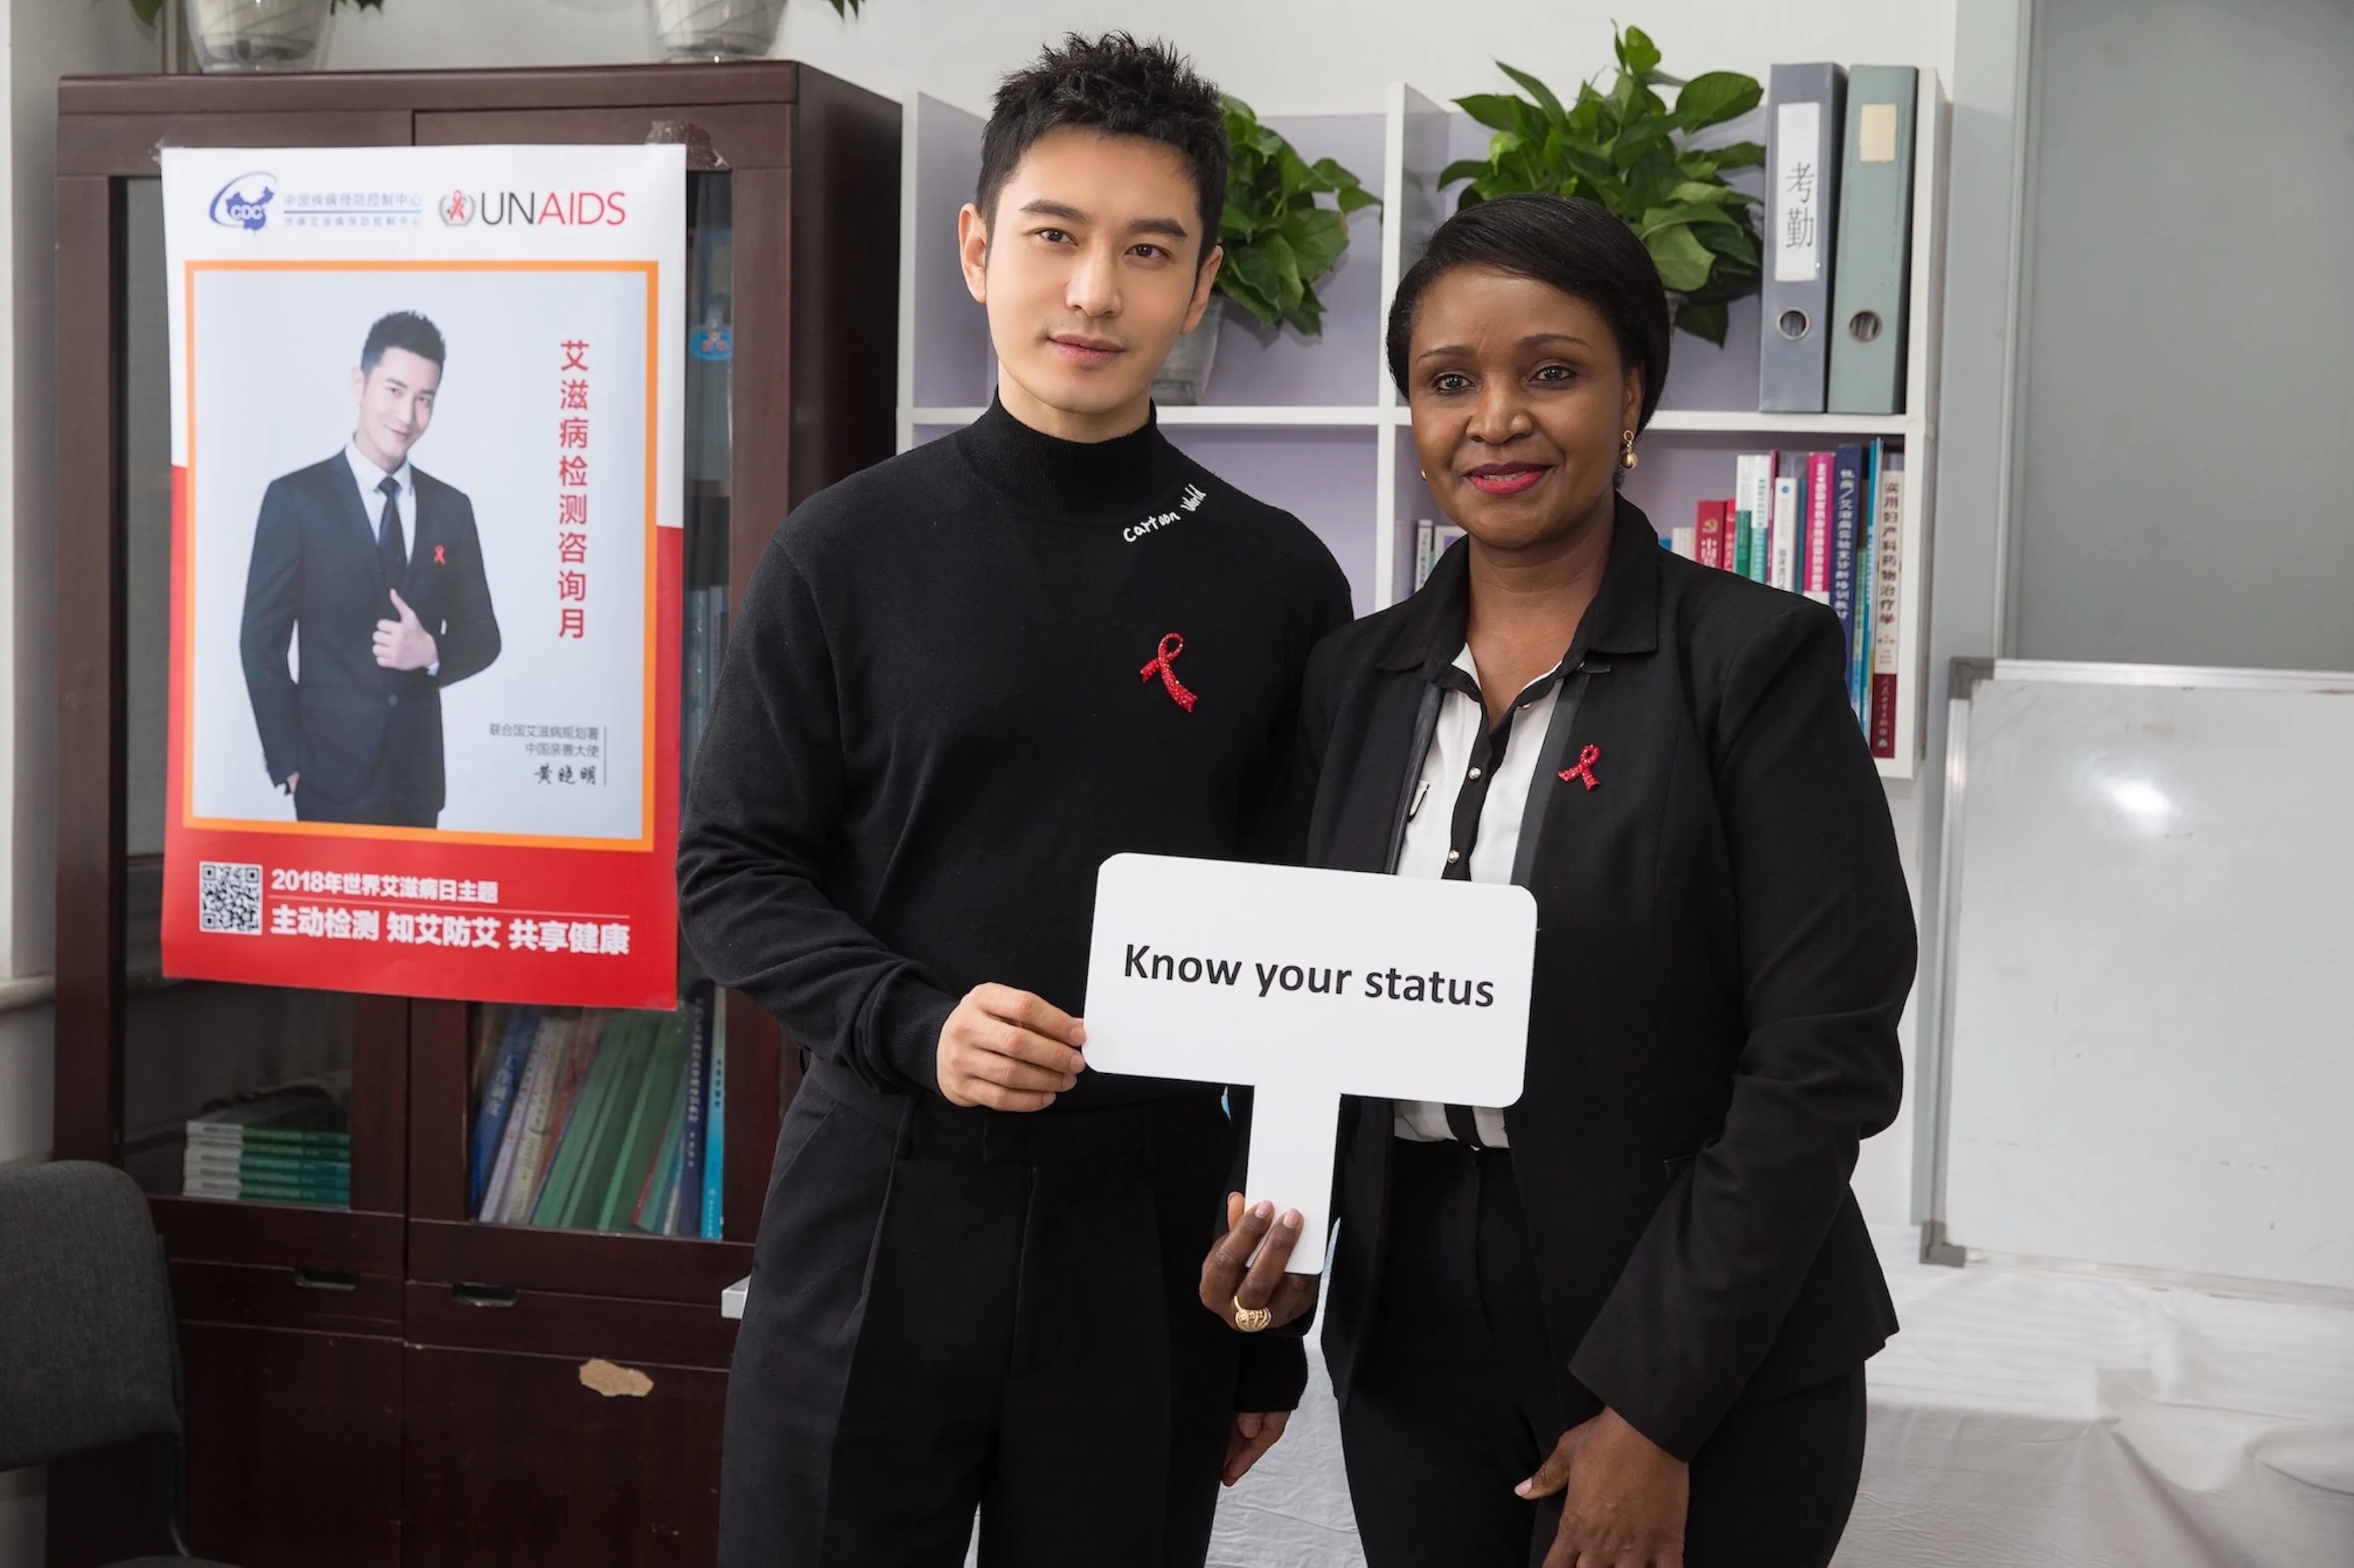 聯合國艾滋病規劃署親善大使黃曉明與聯合國艾滋病規劃署駐華代表桑愛玲女士探訪艾滋病檢測室#1.jpeg